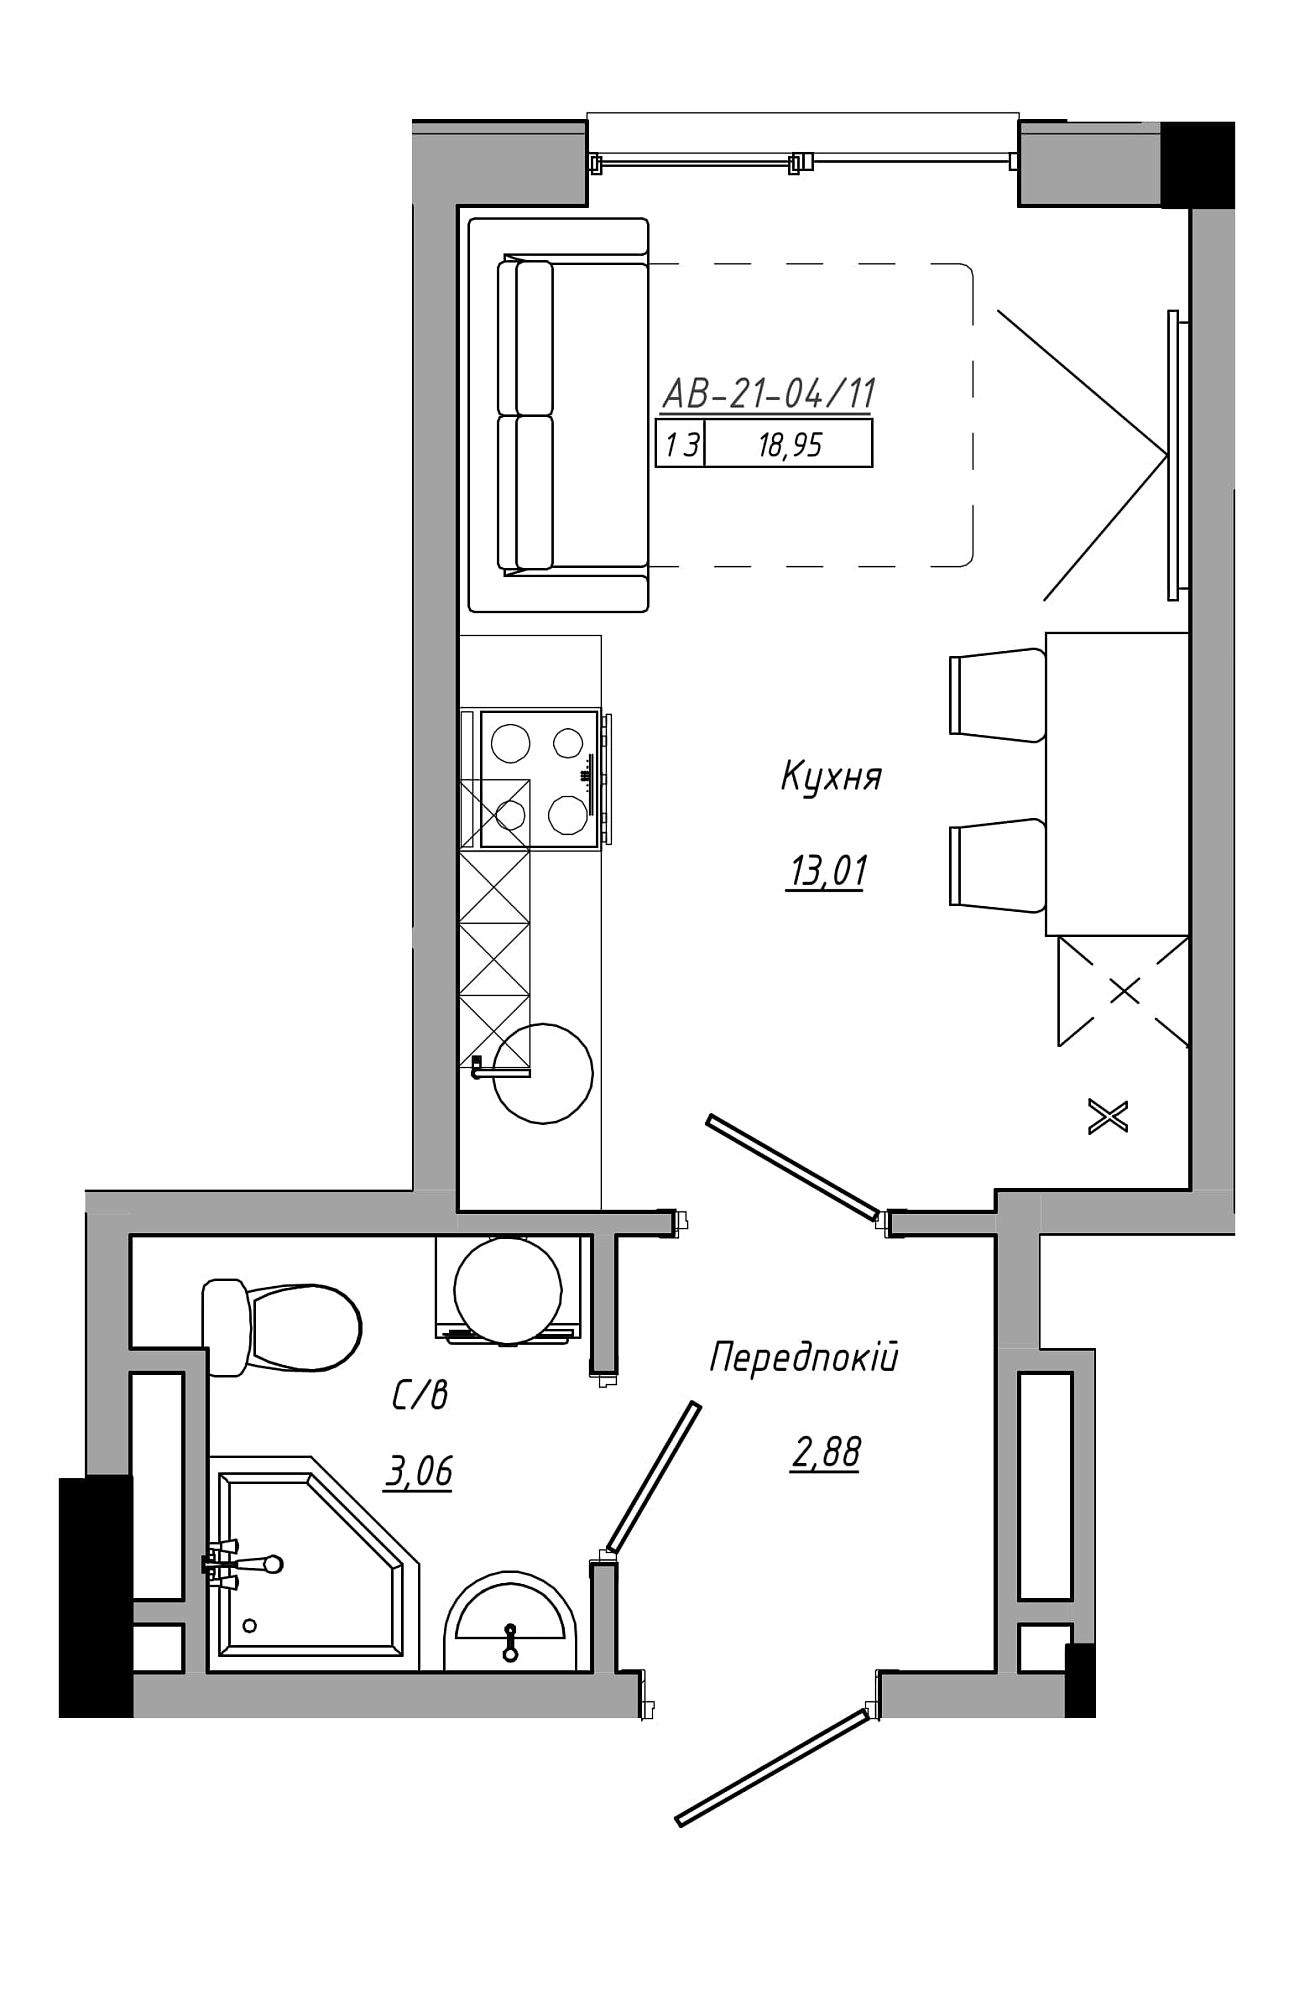 Планування Smart-квартира площею 18.95м2, AB-21-04/00011.